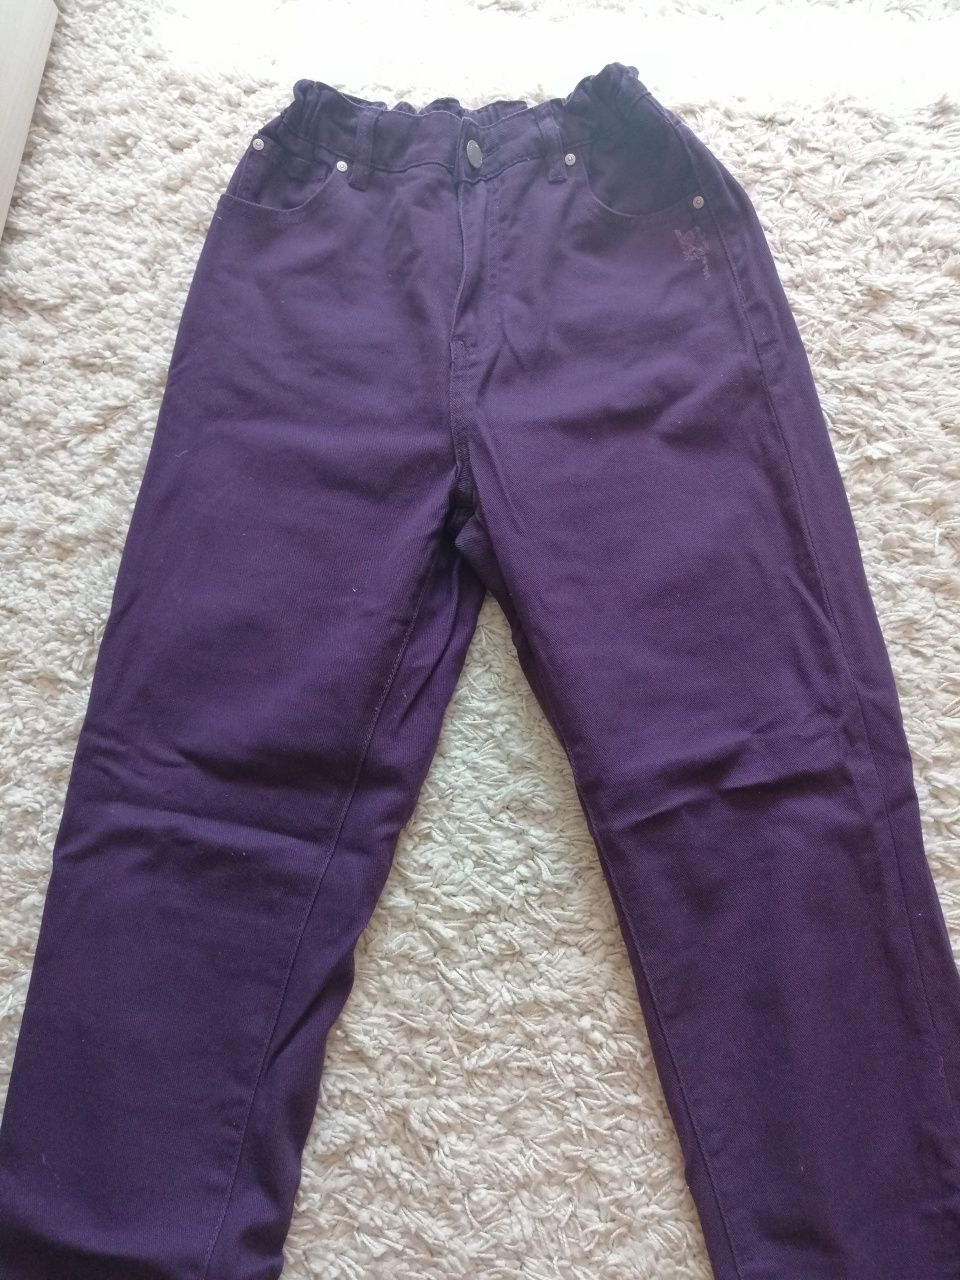 Fioletowe jeansy damskie z gumką w pasie rozmiar 36 marki Reserved